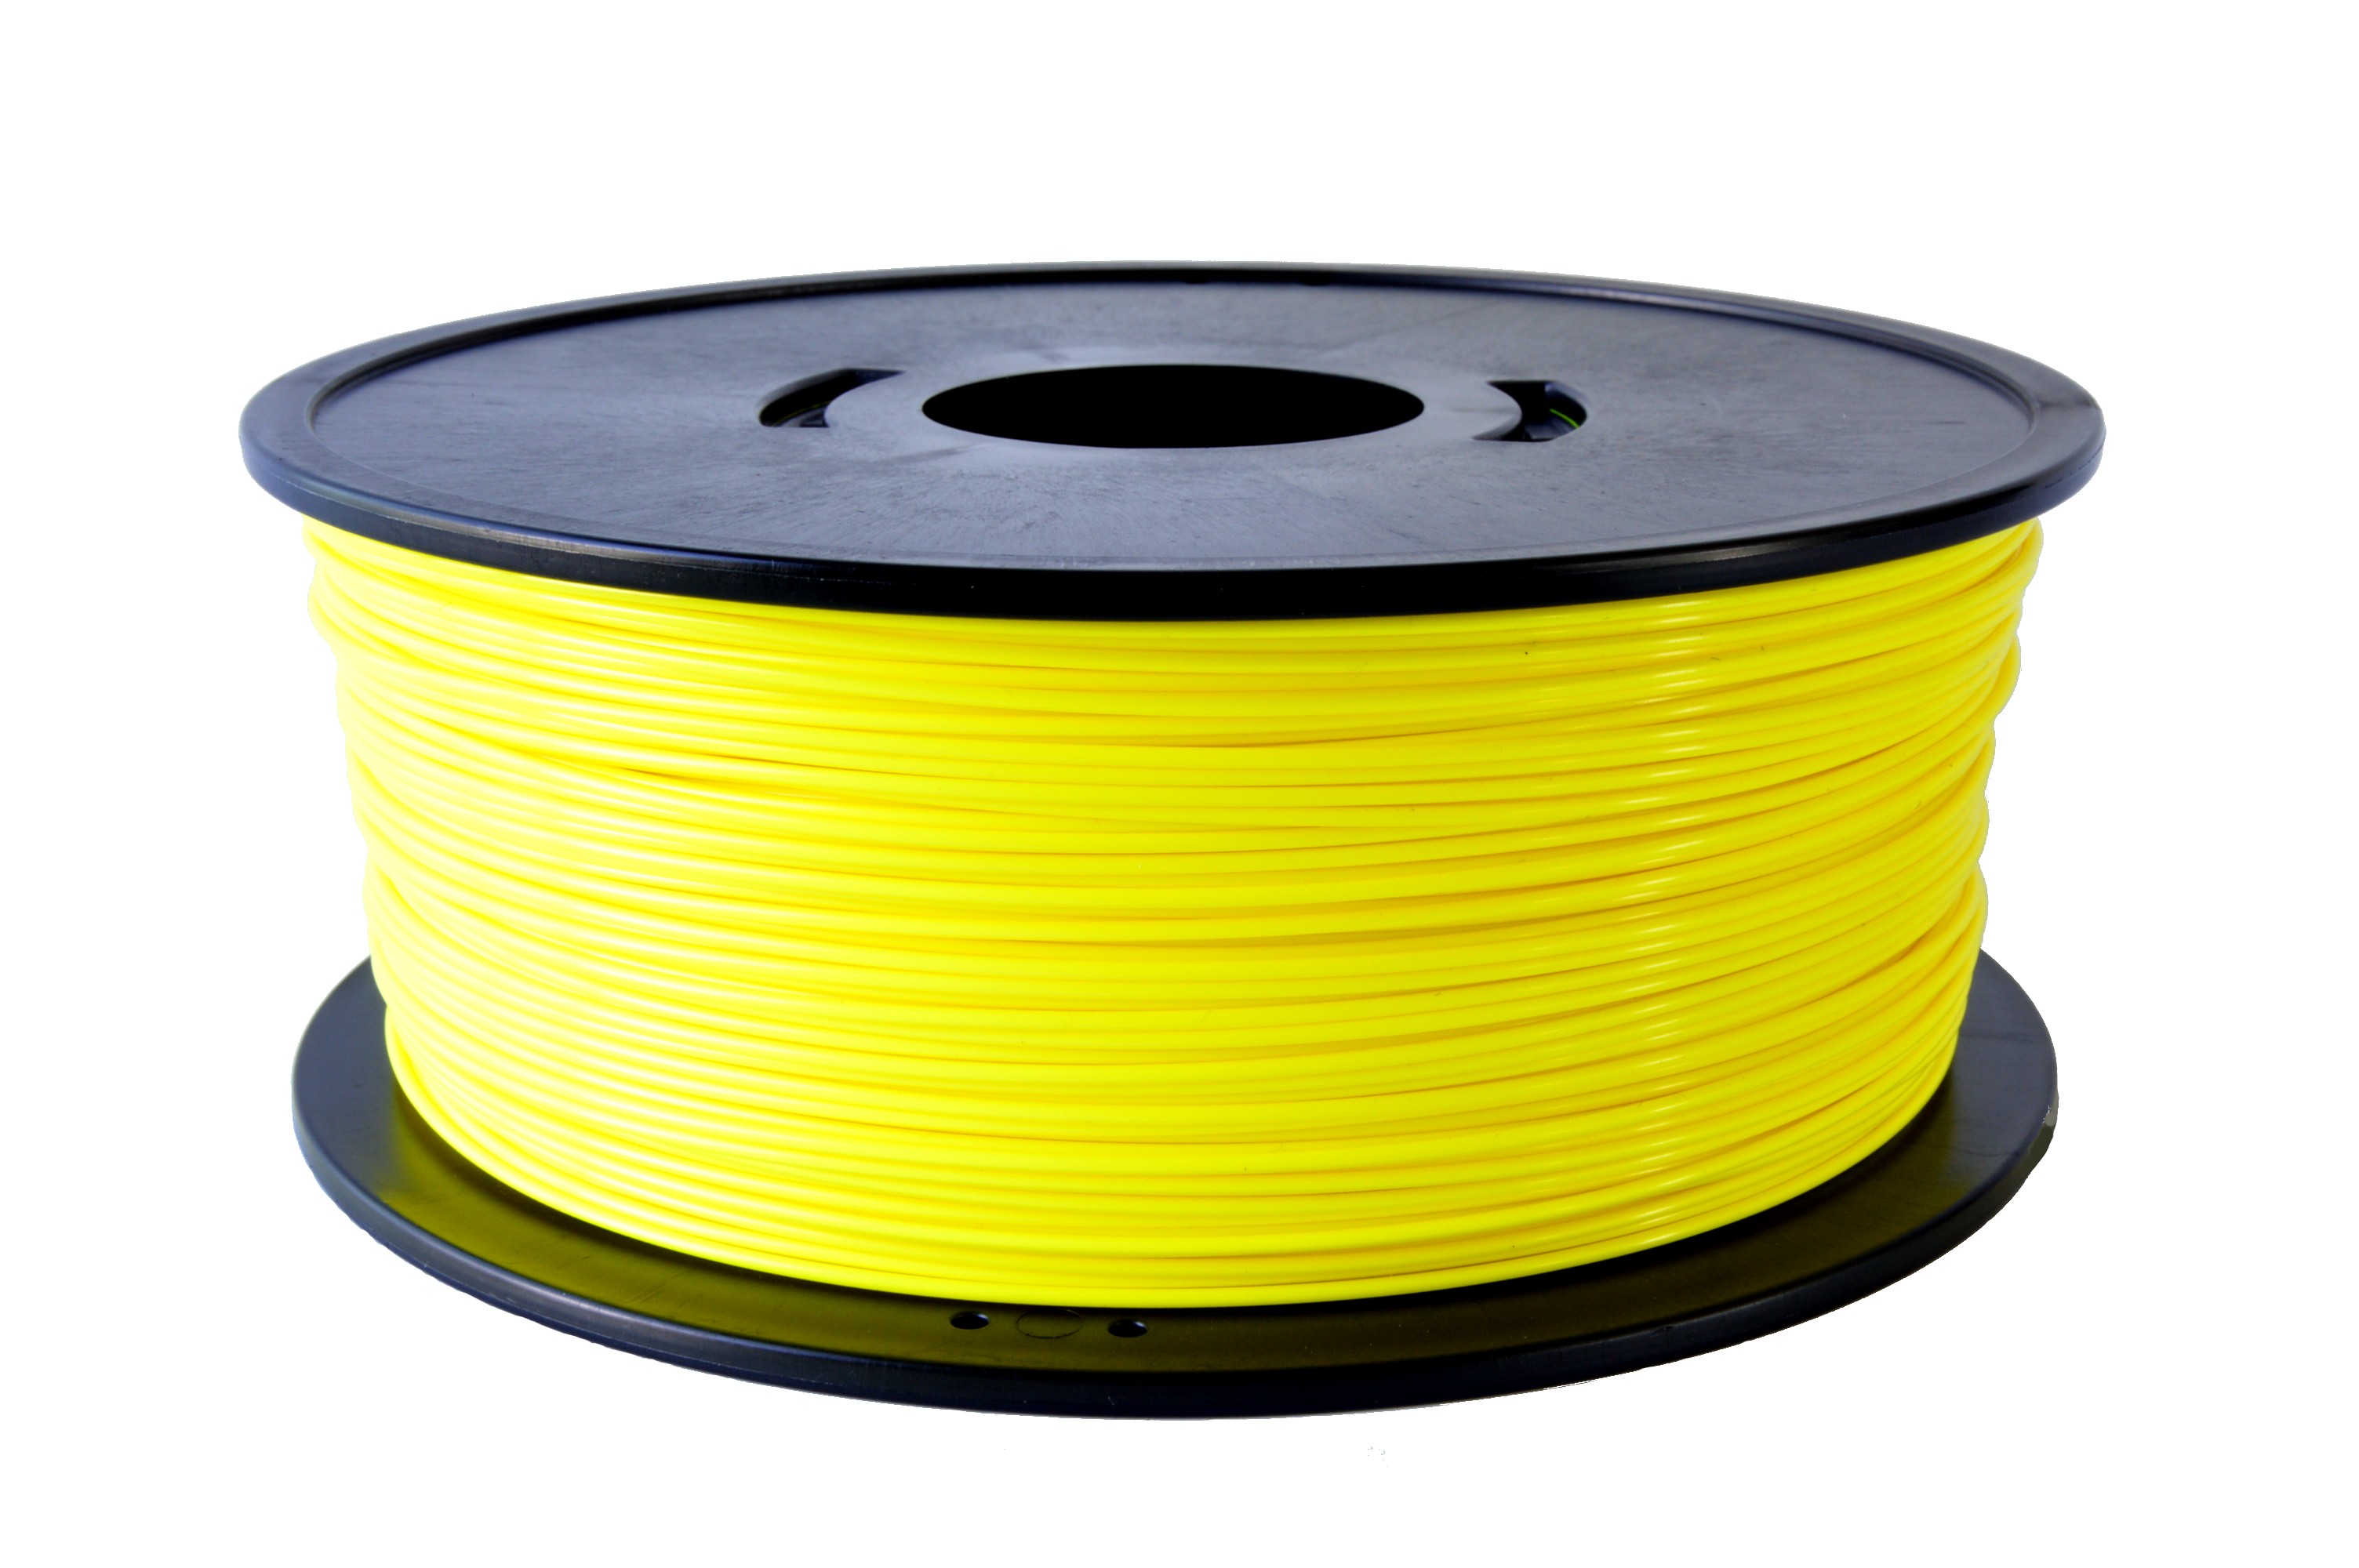 PLA Filament 1.75mm New Noir, GEEETECH Imprimante 3D Filament PLA 1kg Spool